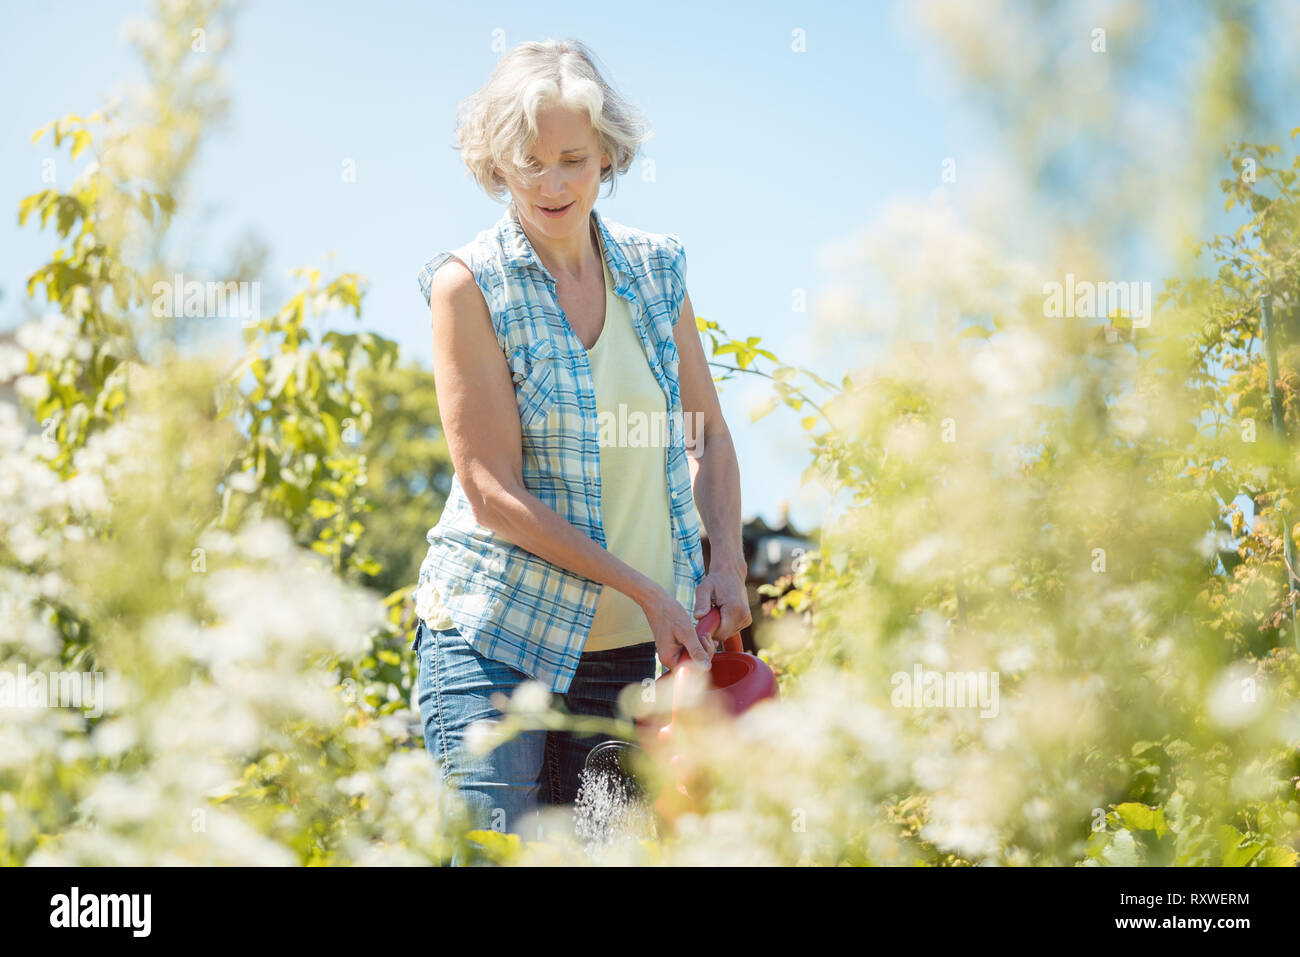 Bestager woman watering plants in her garden Stock Photo